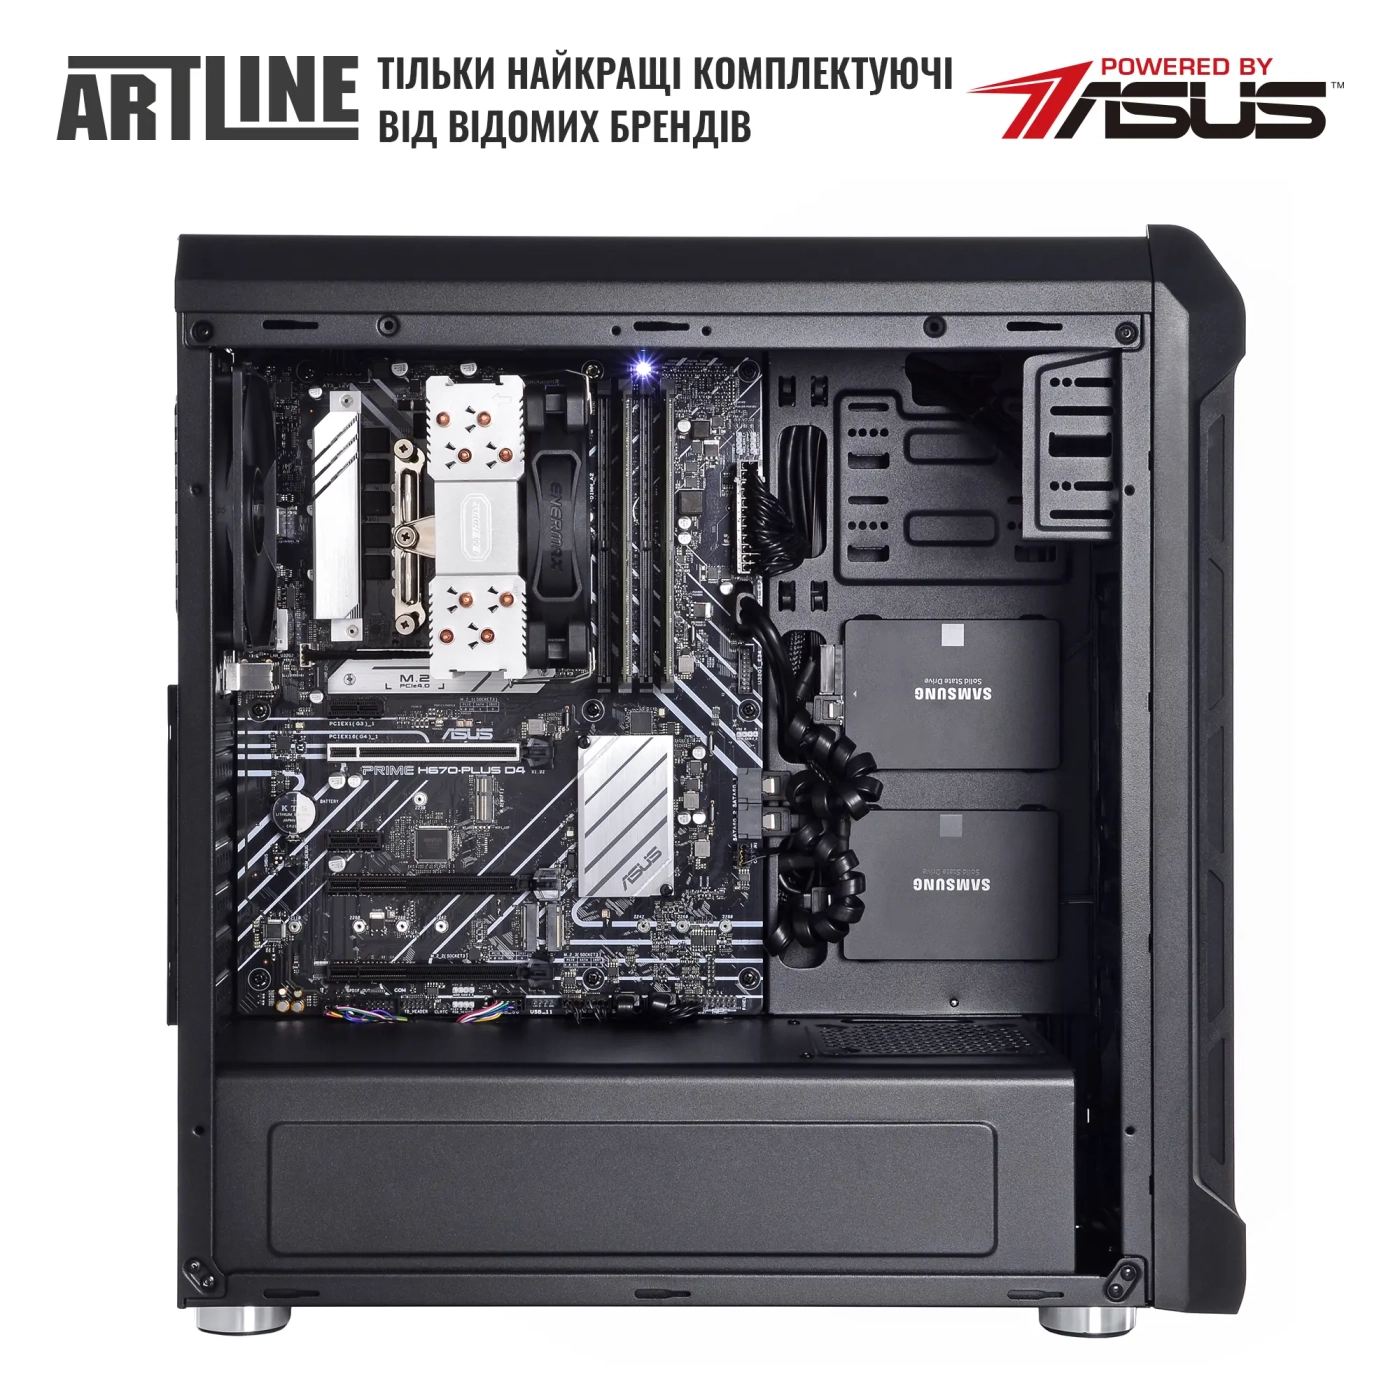 Купить Сервер ARTLINE Business T27 (T27v40) - фото 4